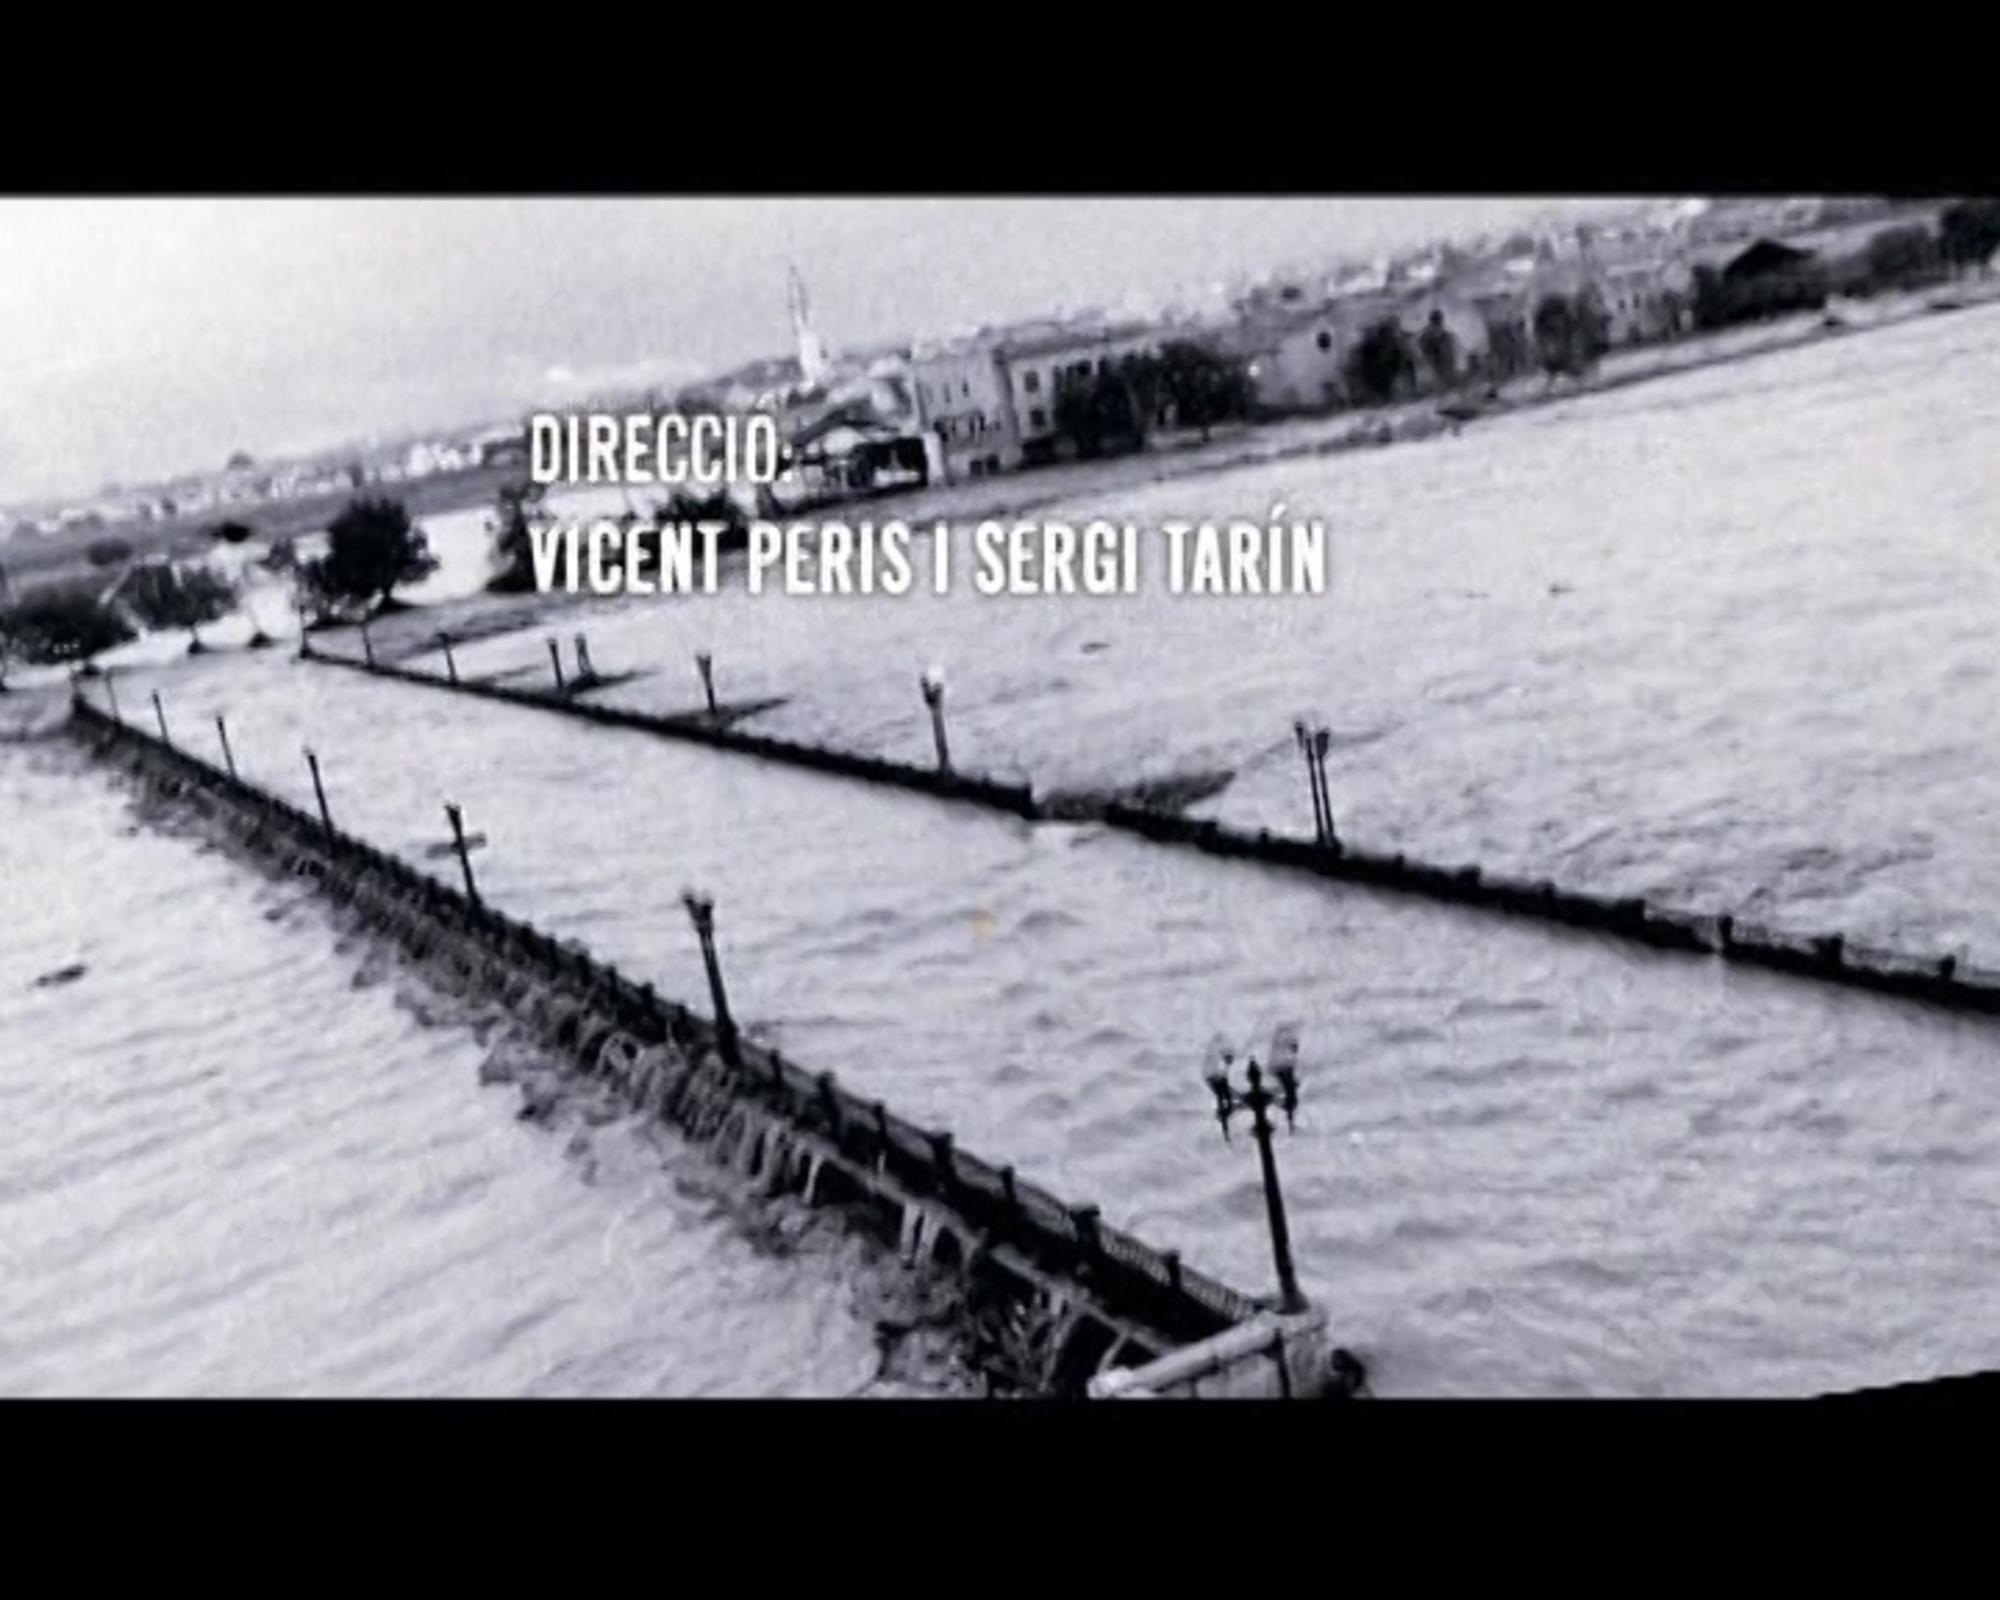 documental 14 d’octubre del 1957: el dia en què parlaren les pedres (2007), codirigit pels periodistes Vicent Peris i Sergi Tarín